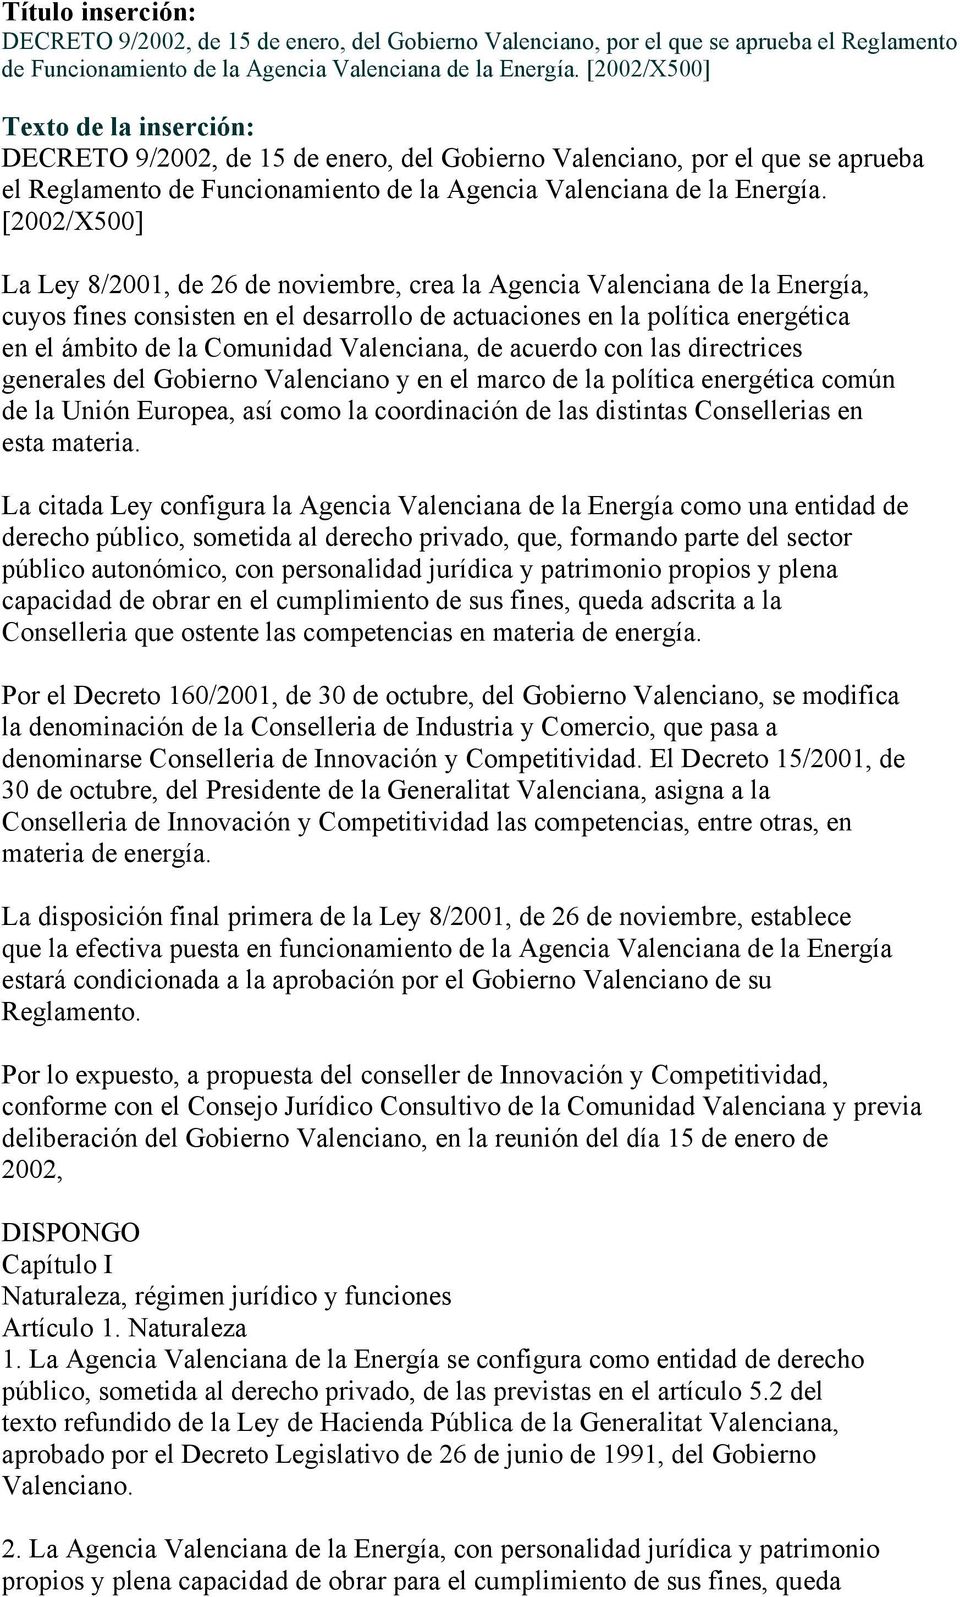 [2002/X500] La Ley 8/2001, de 26 de noviembre, crea la Agencia Valenciana de la Energía, cuyos fines consisten en el desarrollo de actuaciones en la política energética en el ámbito de la Comunidad